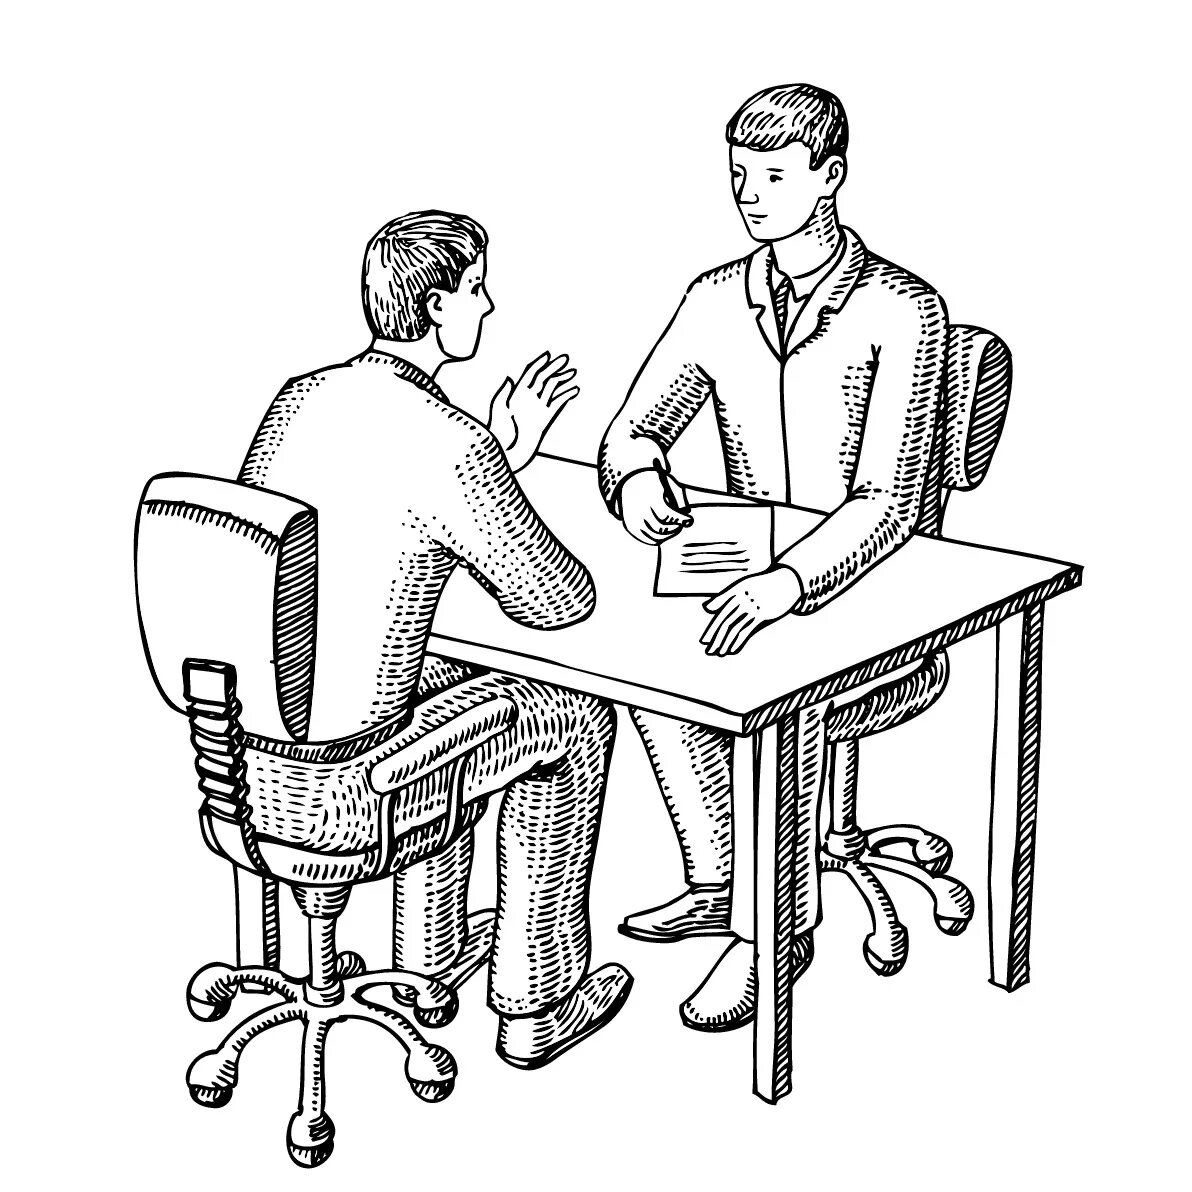 Рисунок индивидуальная. Человек сидит за столом. Наброски за столом. Человек сидит за столом рисунок. Переговоры иллюстрация.